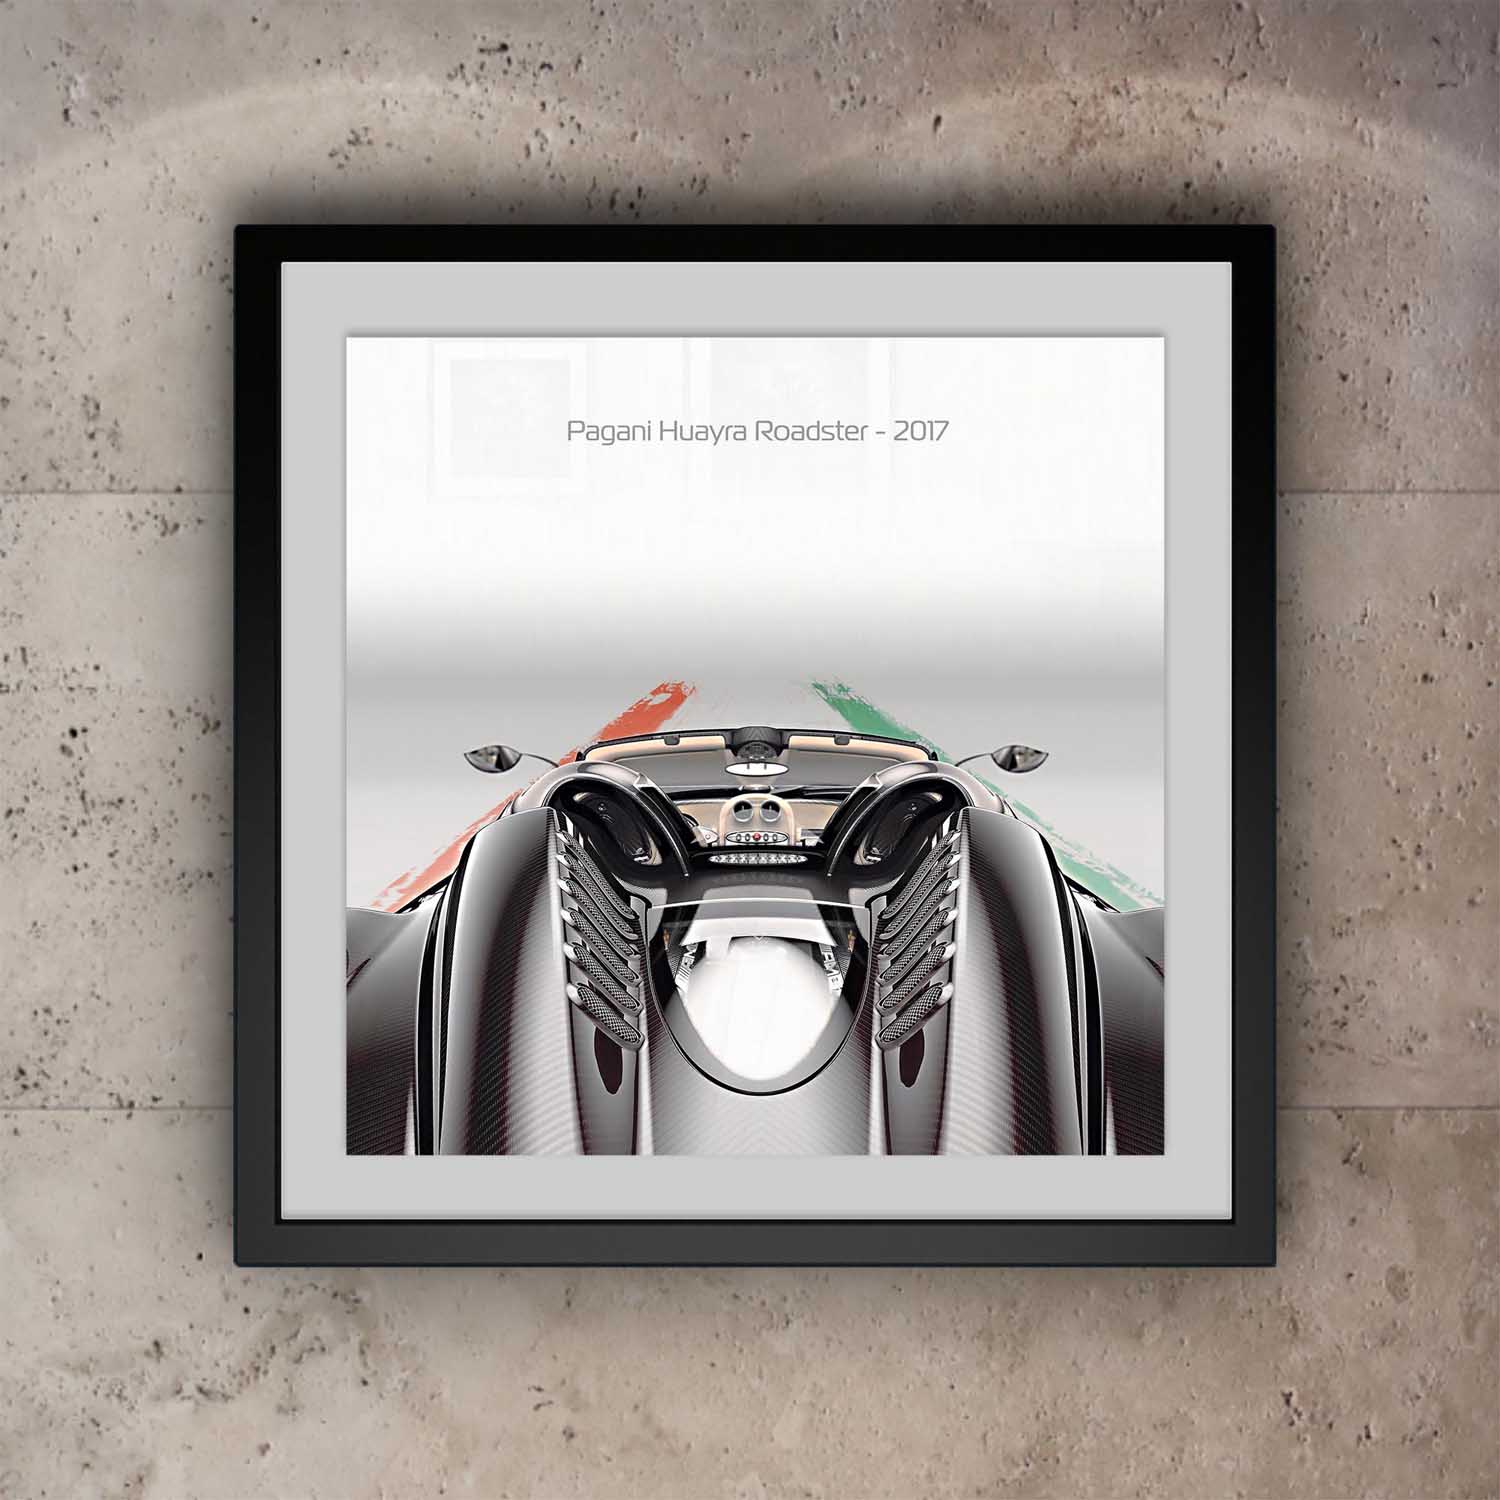 Pagani Huayra Roadster Print - Rear